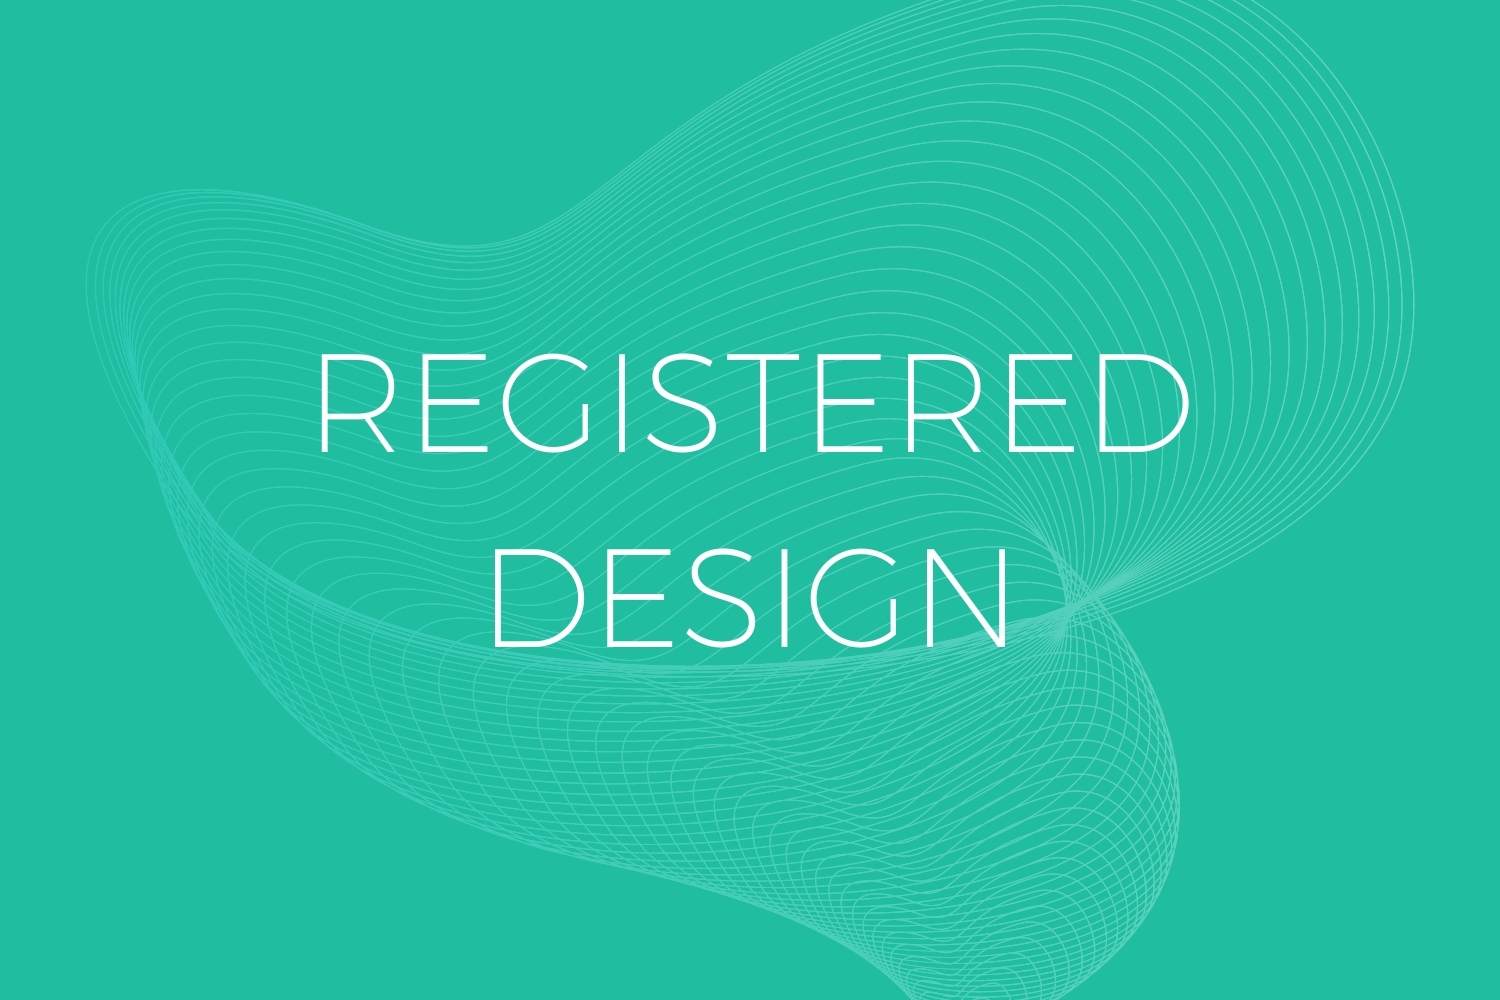 Registered Design